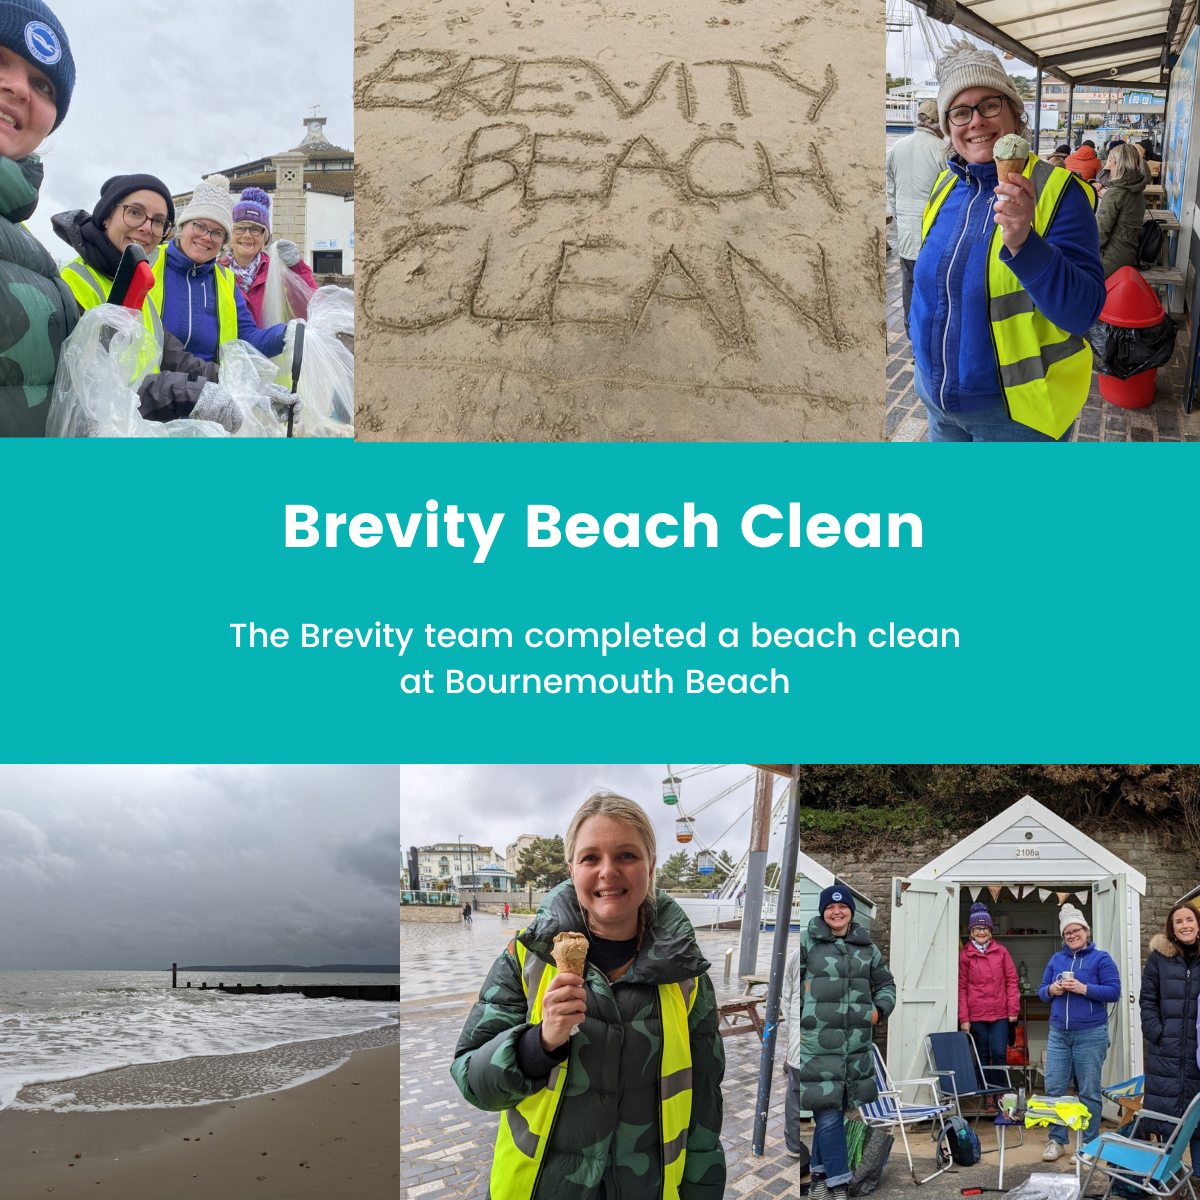 B1G1 giving beach clean